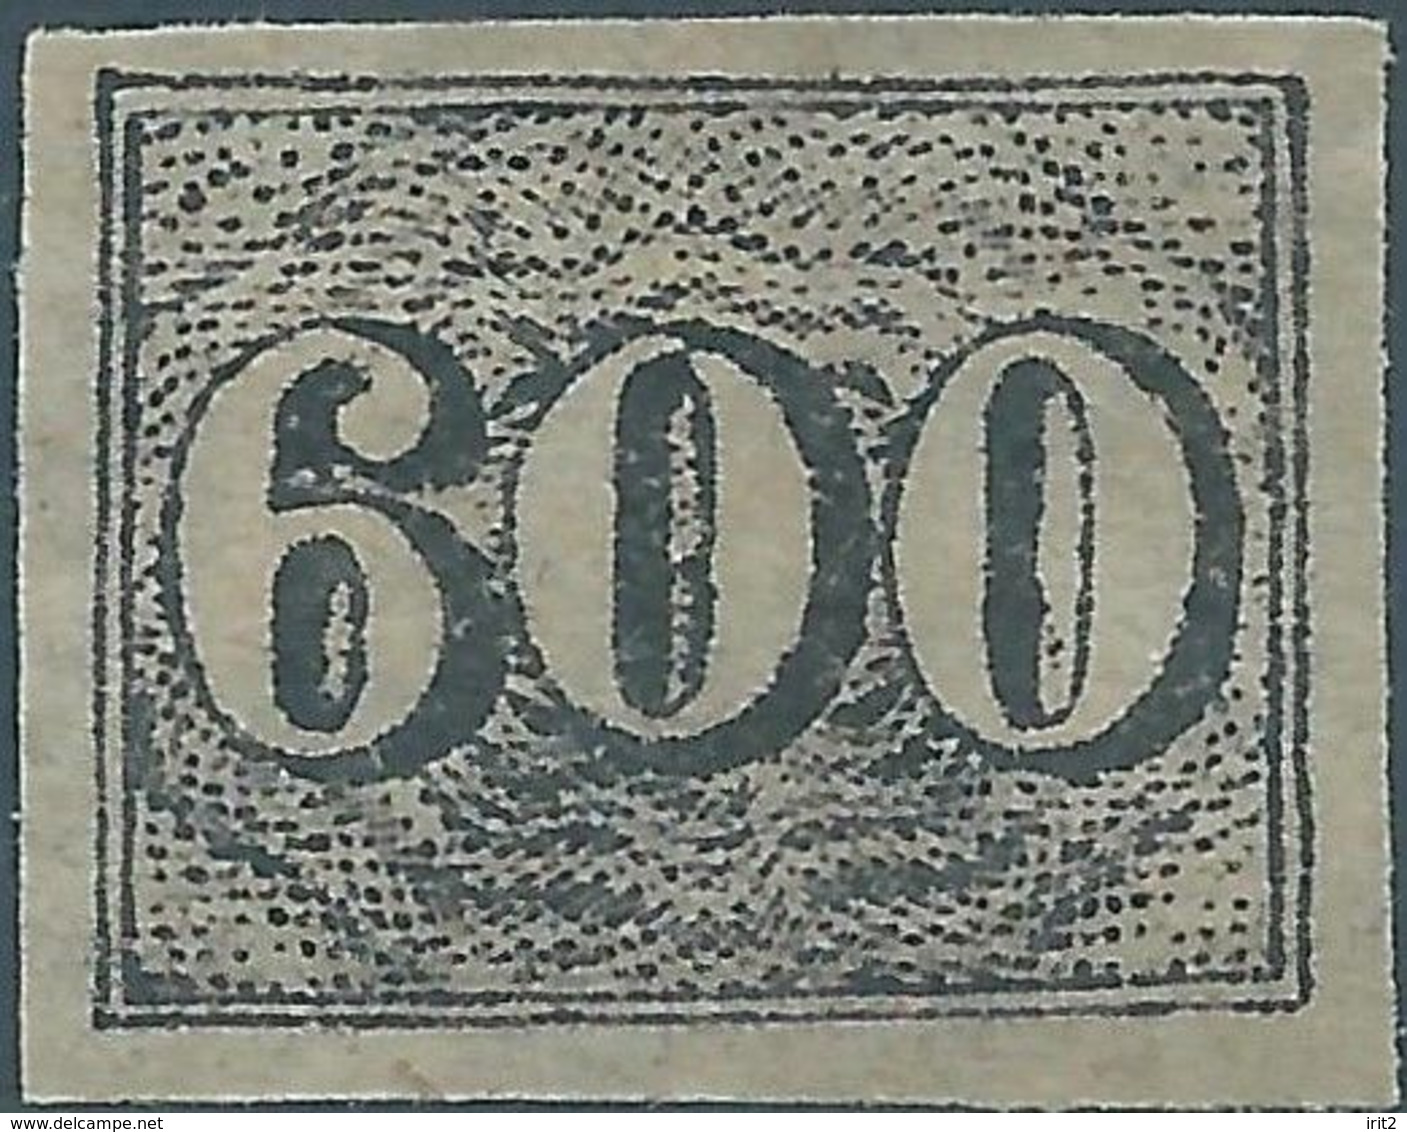 Brazil Brazile,1850 Value Stamps - 600R Hinged,ORIGINAL GUM,Value:€500,00,Rare - Unused Stamps